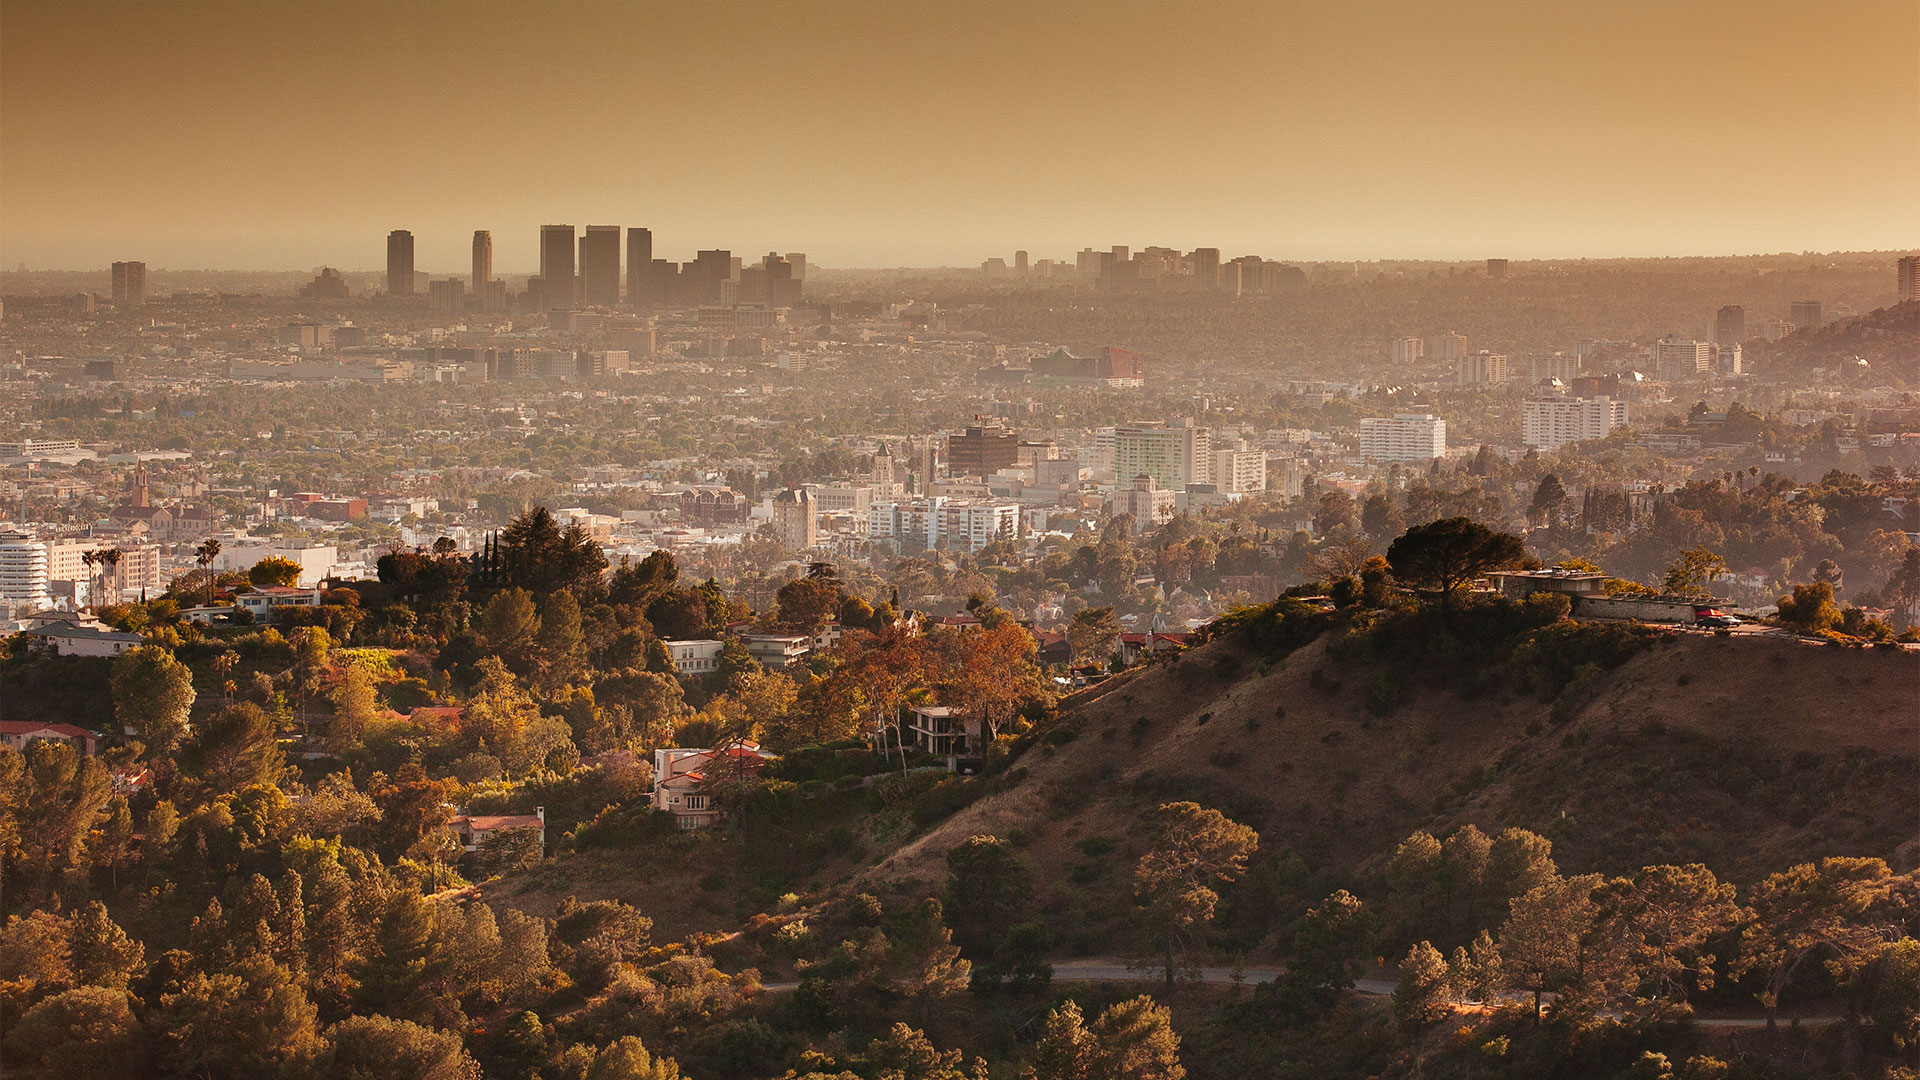 Vista del centro de la ciudad de Los Ángeles desde el Observatorio Griffith durante la puesta de sol (Getty)